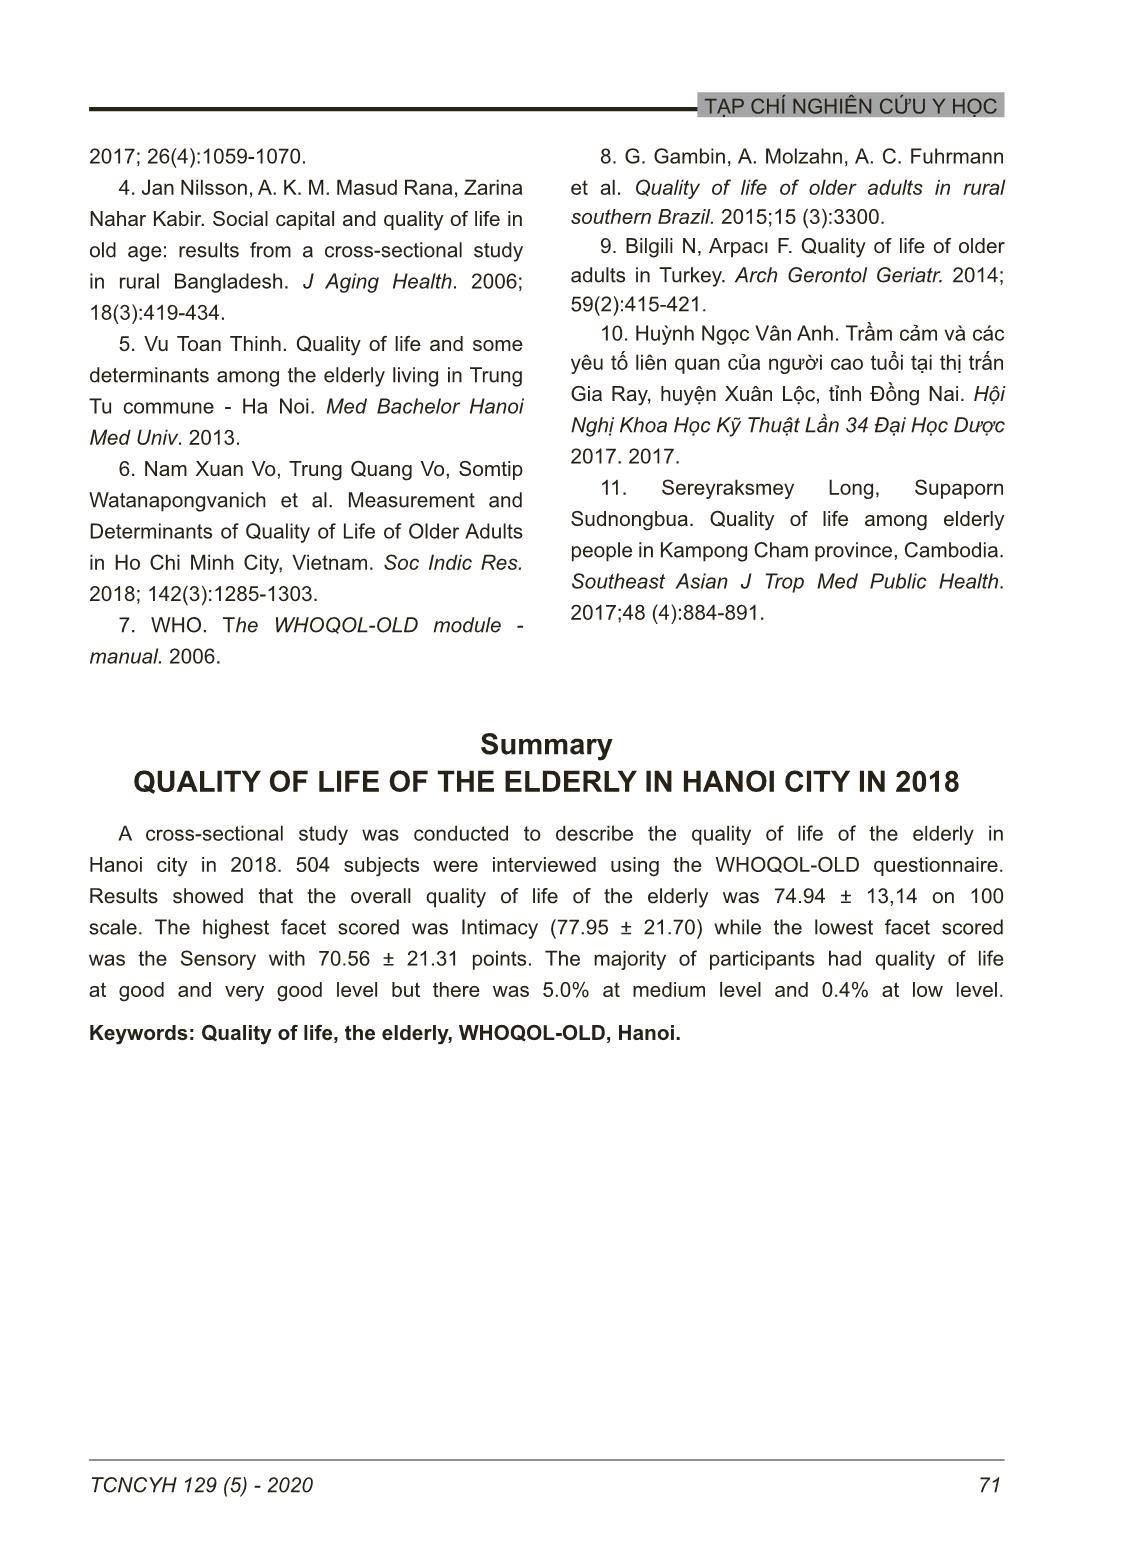 Chất lượng cuộc sống của người cao tuổi thành phố Hà Nội năm 2018 trang 6